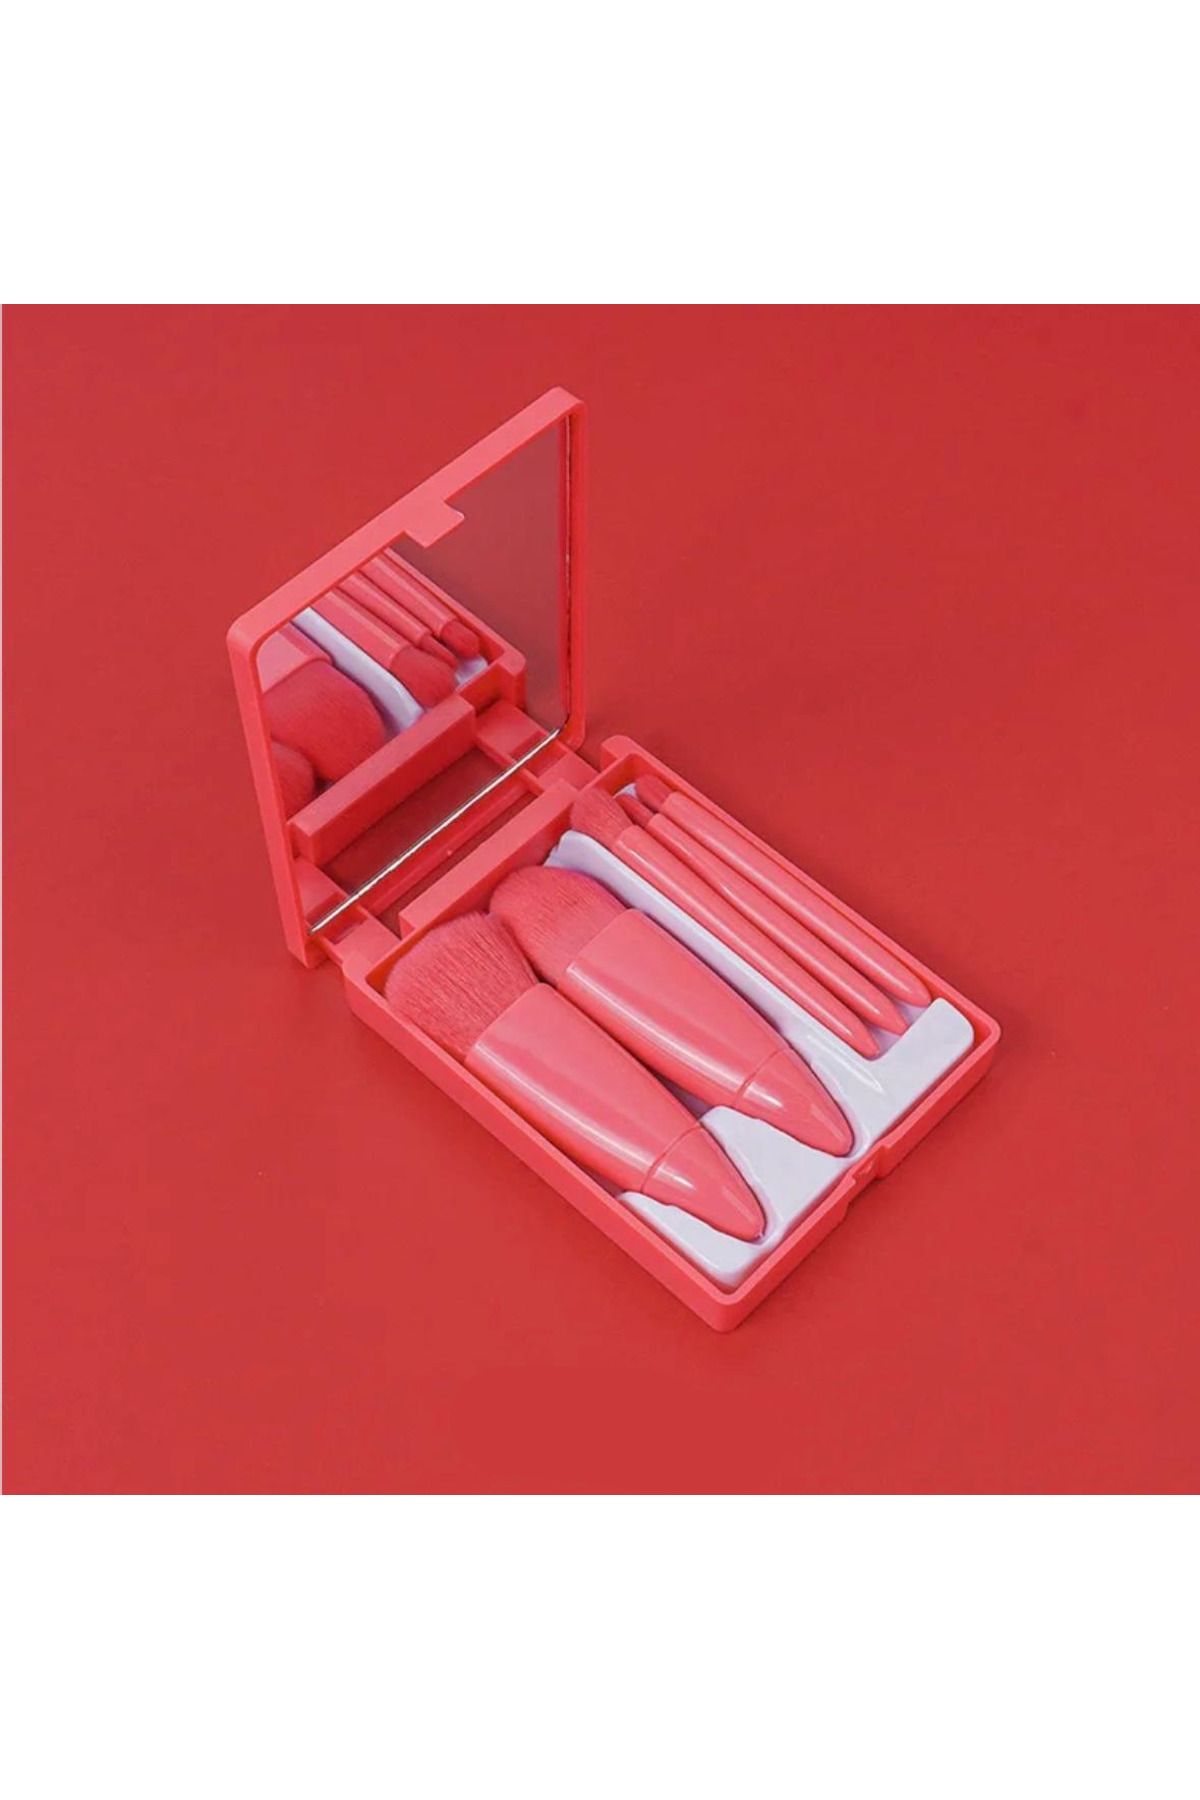 ROWENAROSE Profesyonel Taşınabilir Aynalı Makyaj Fırça Seti 5'Li Kırmızı